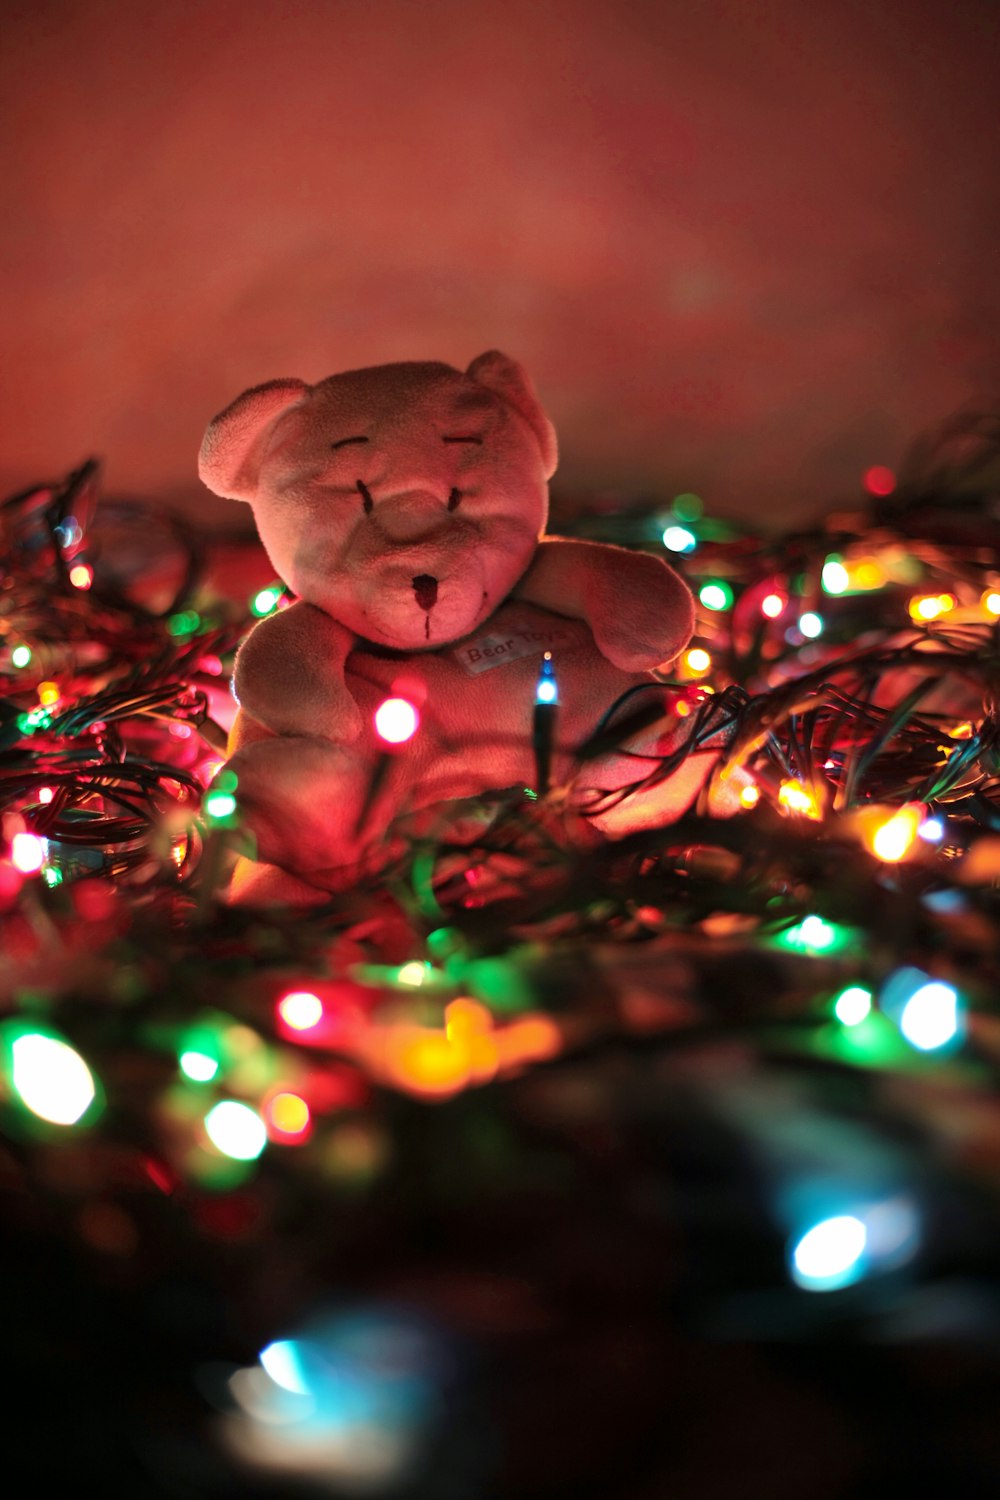 brinquedo de pelúcia do urso marrom na árvore de Natal